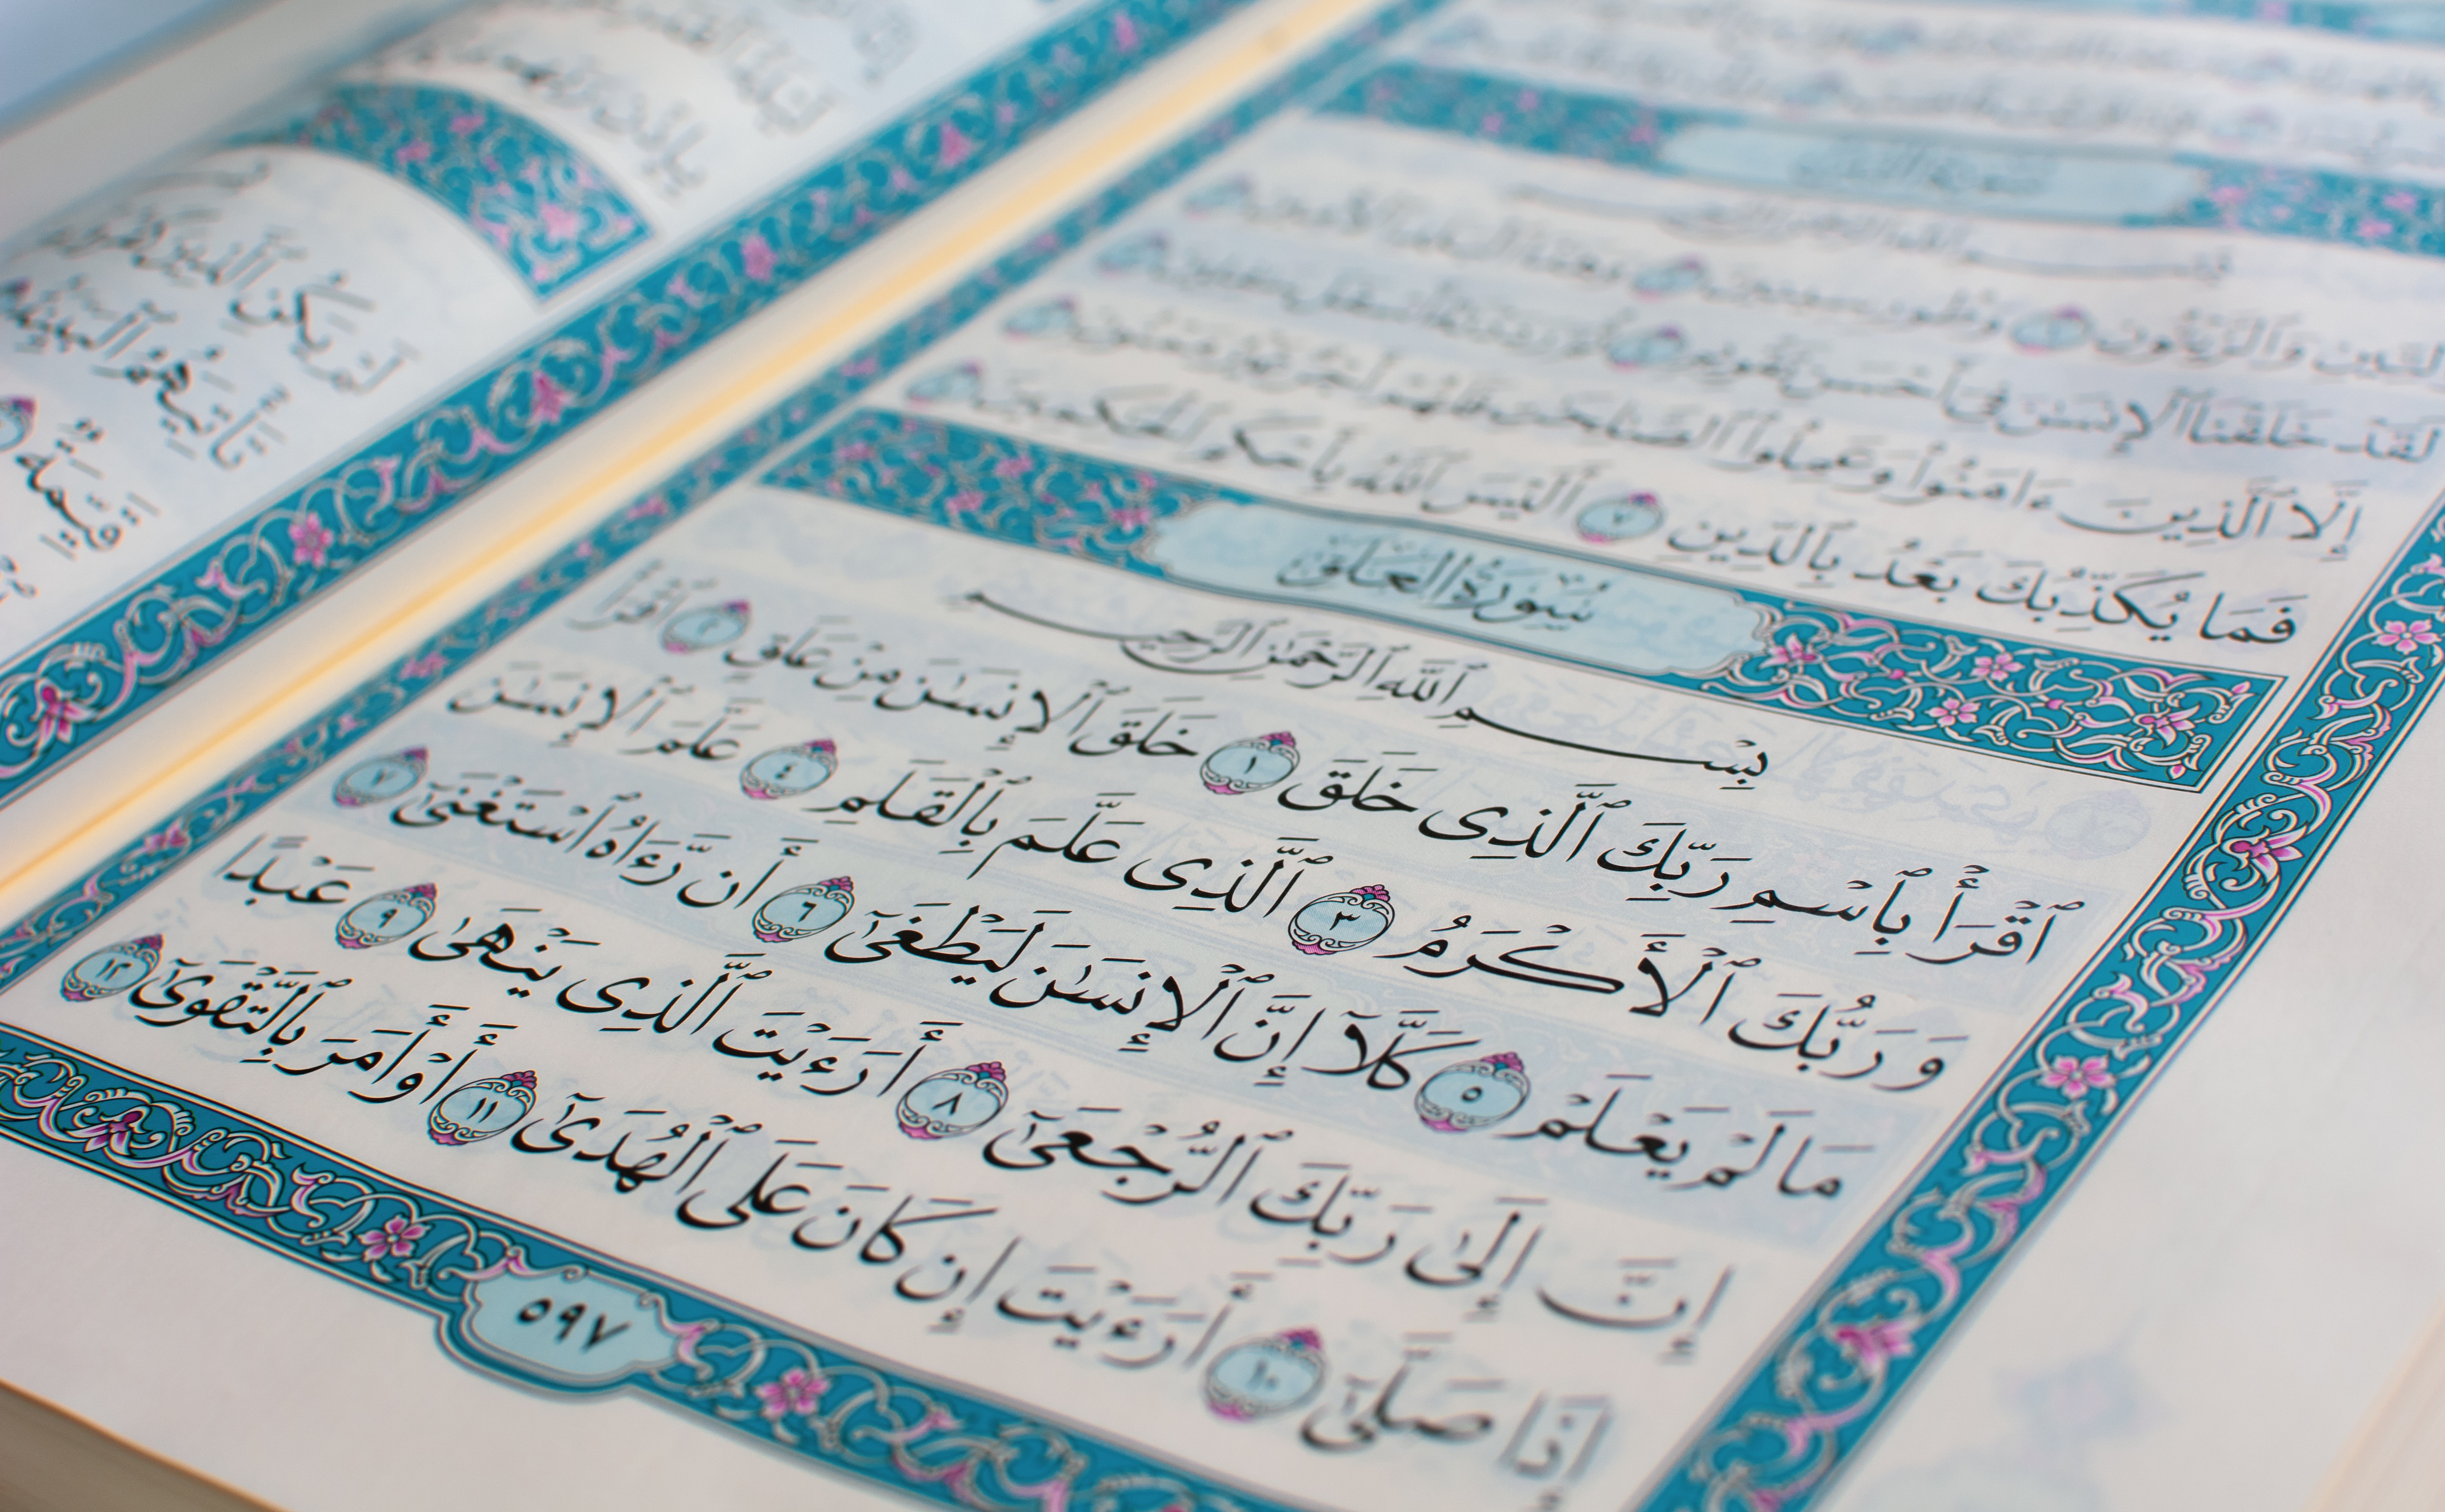 Surah Alaq - Al Quran